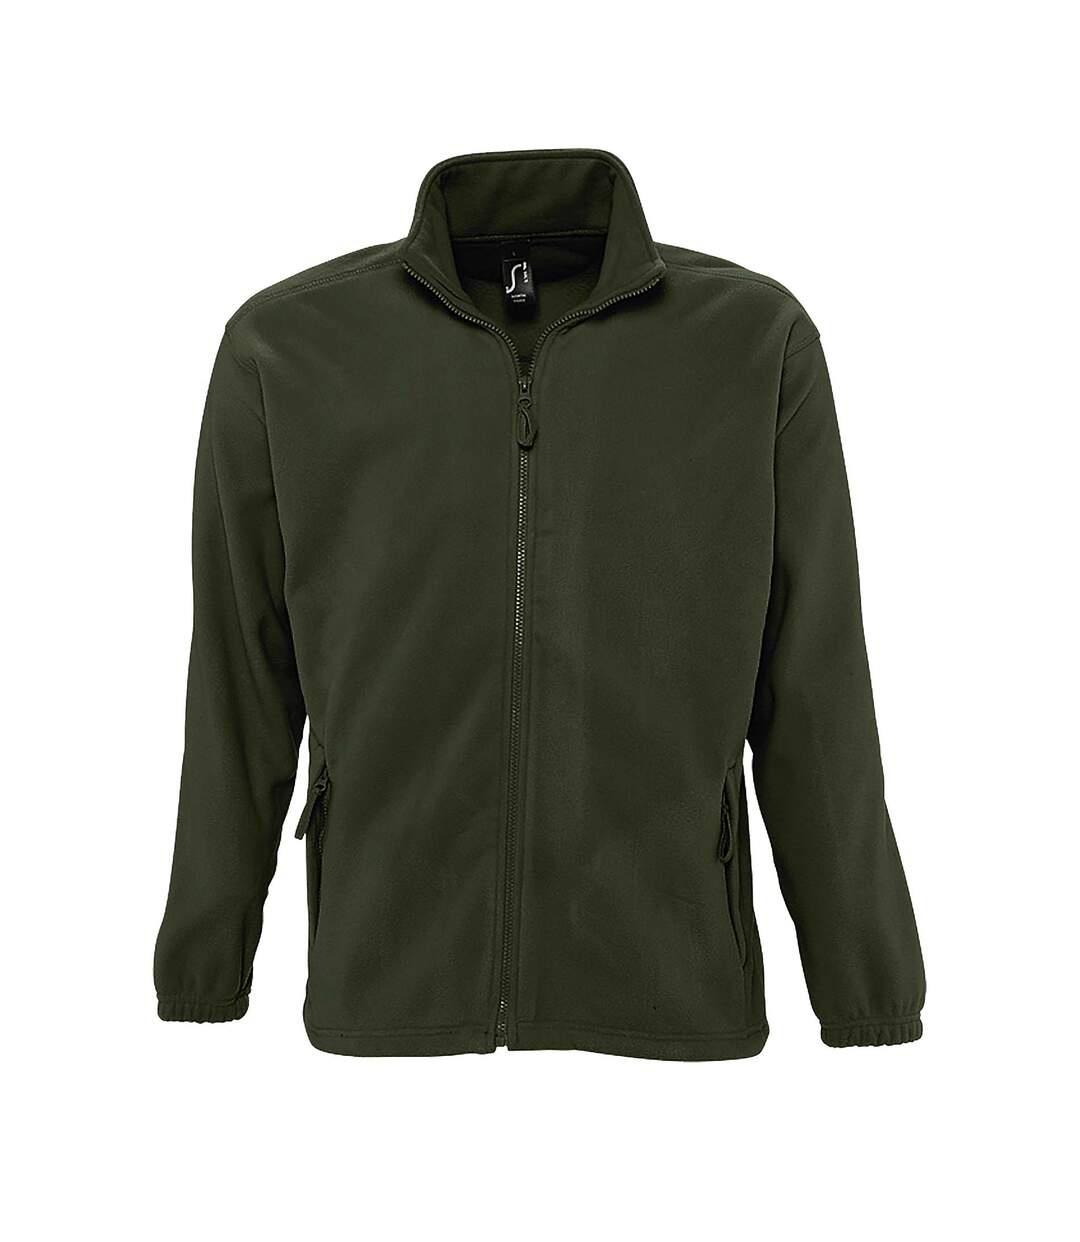 SOLS Mens North Full Zip Outdoor Fleece Jacket (Army) - UTPC343